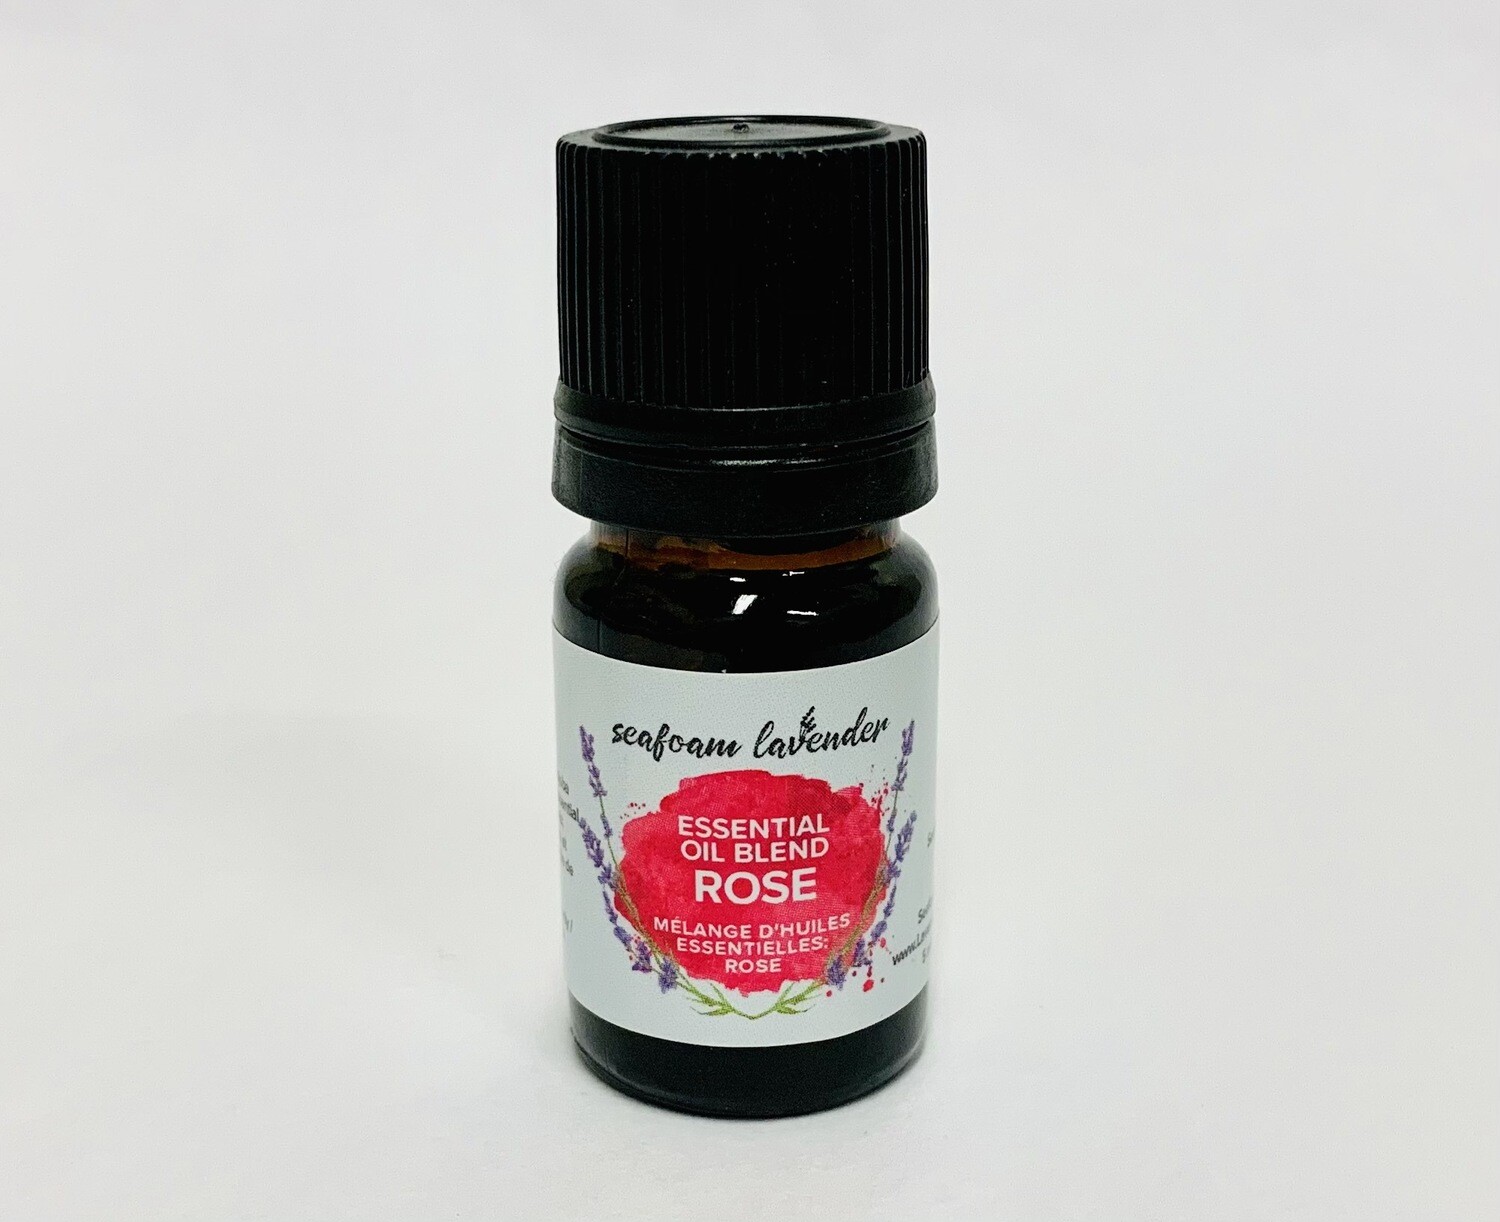 Rose Essential Oil Blend- Seafoam Lavender